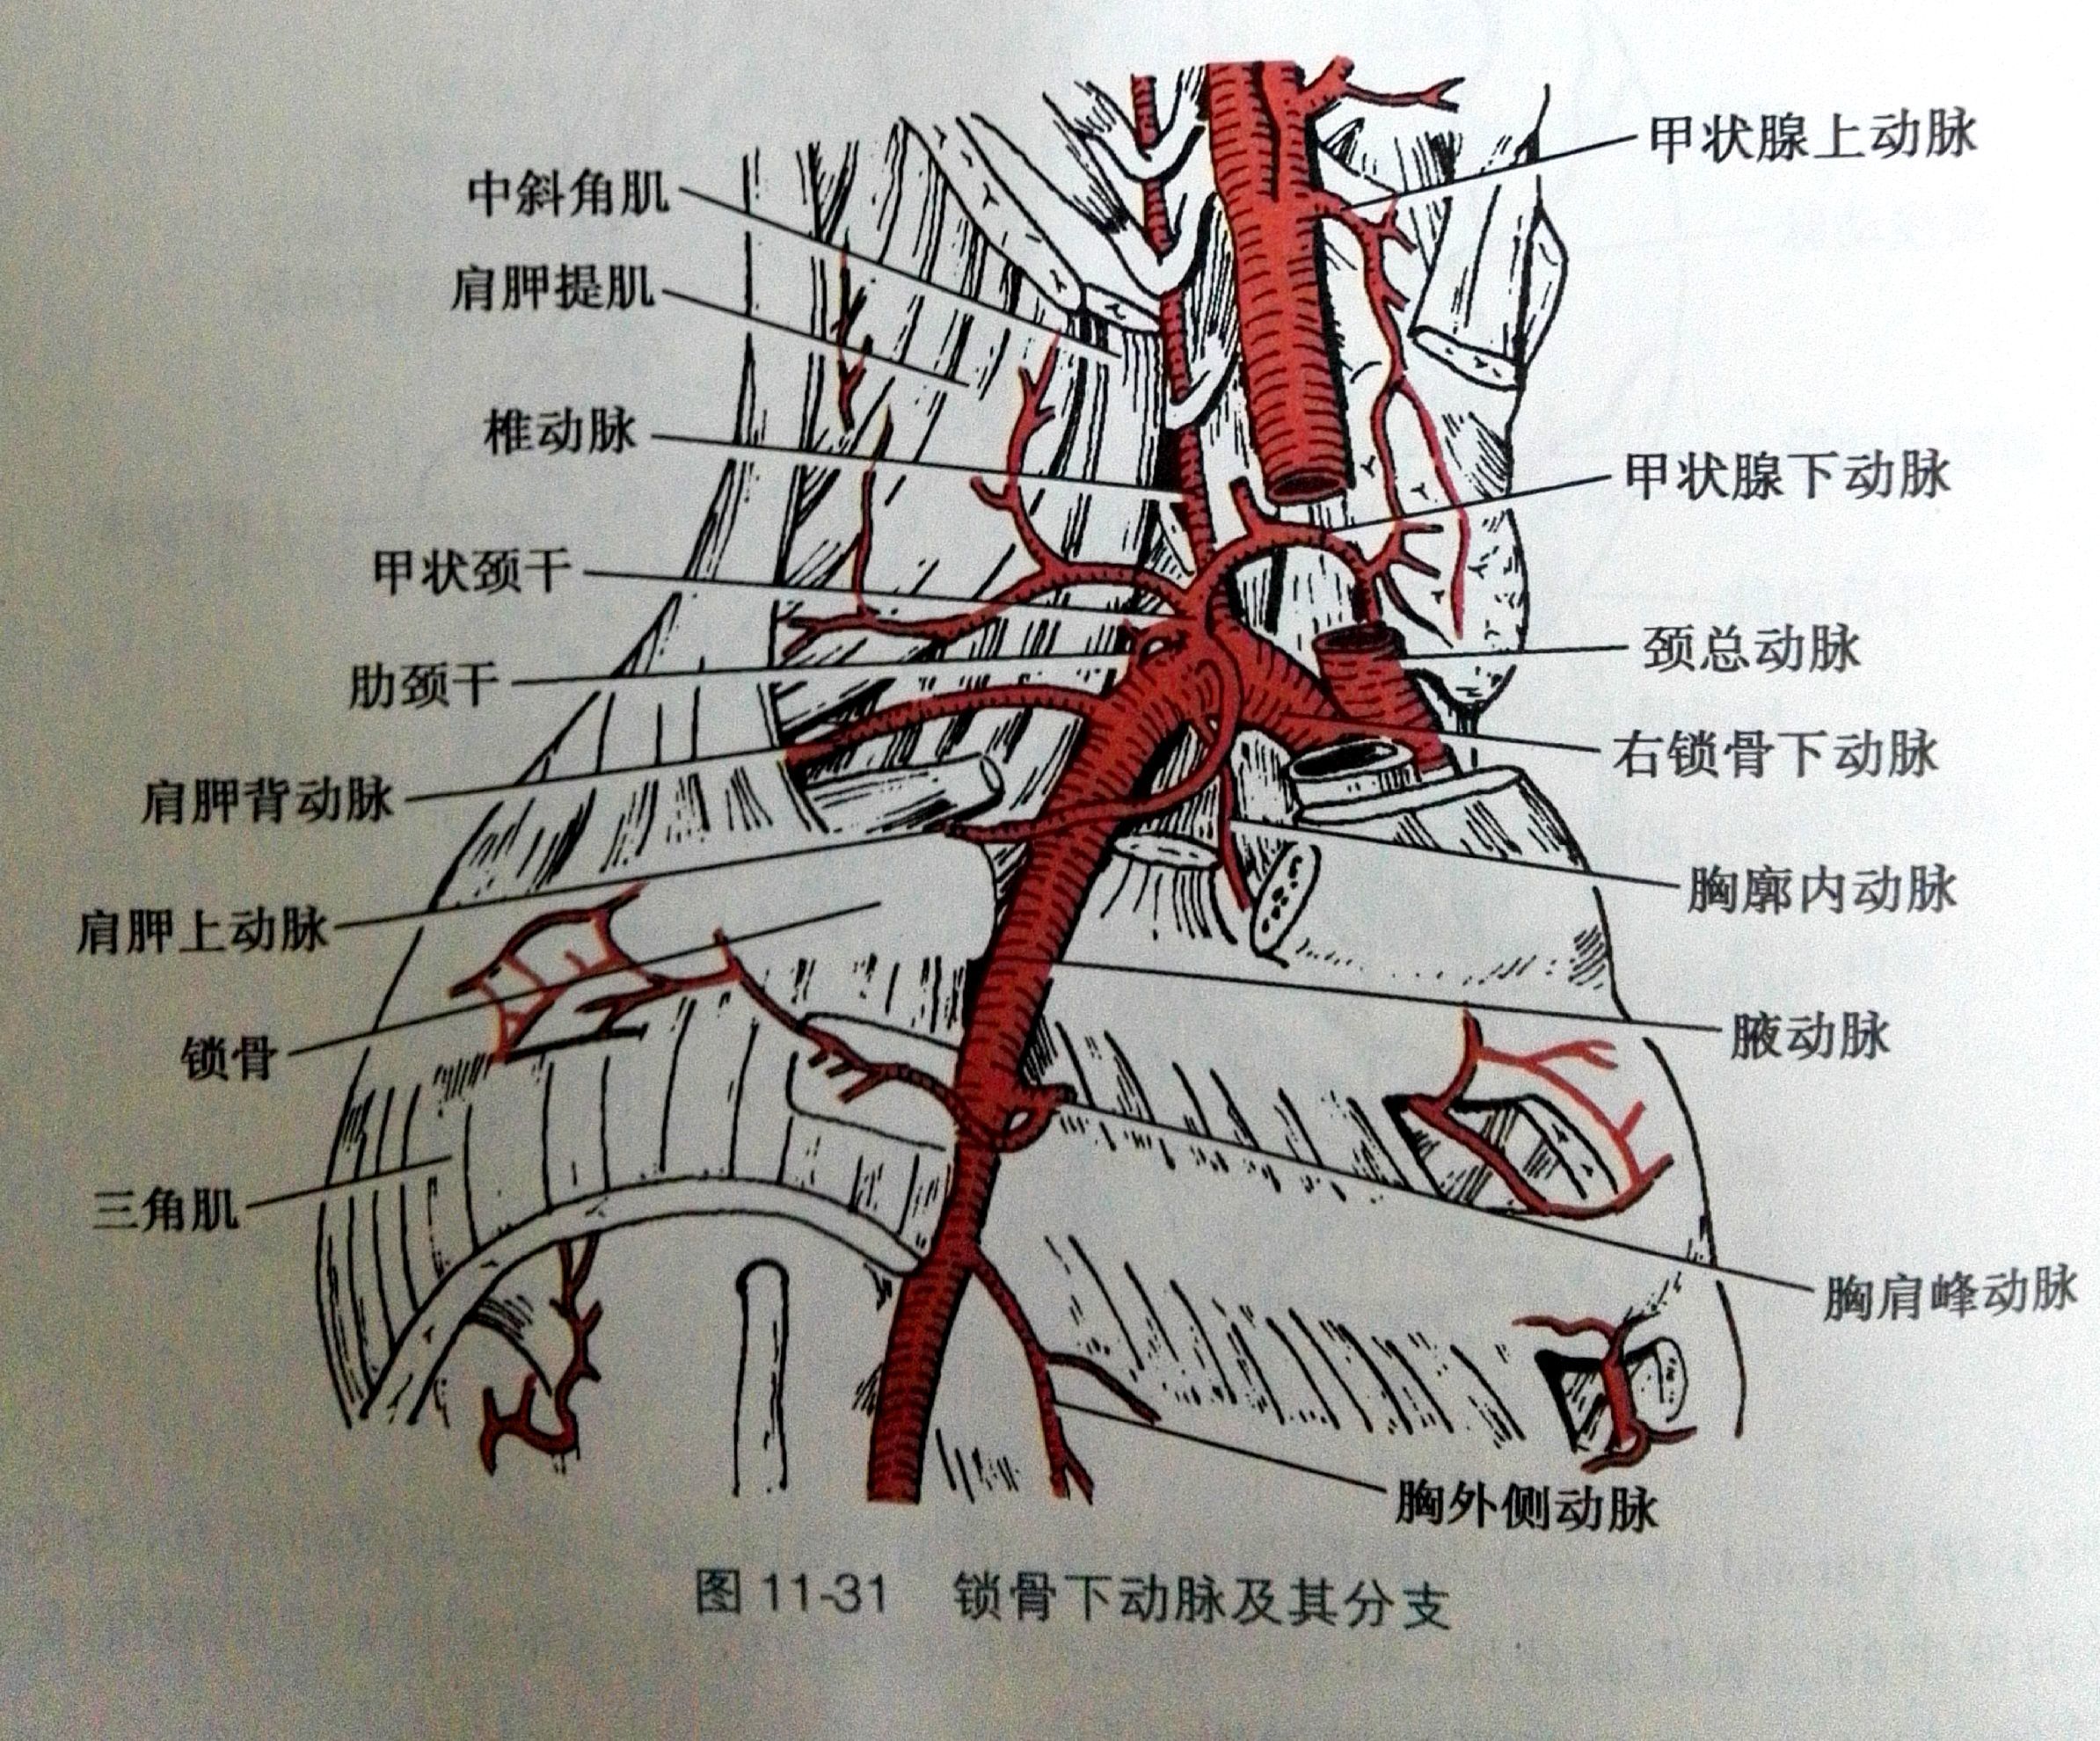 左锁骨下动脉远端图片